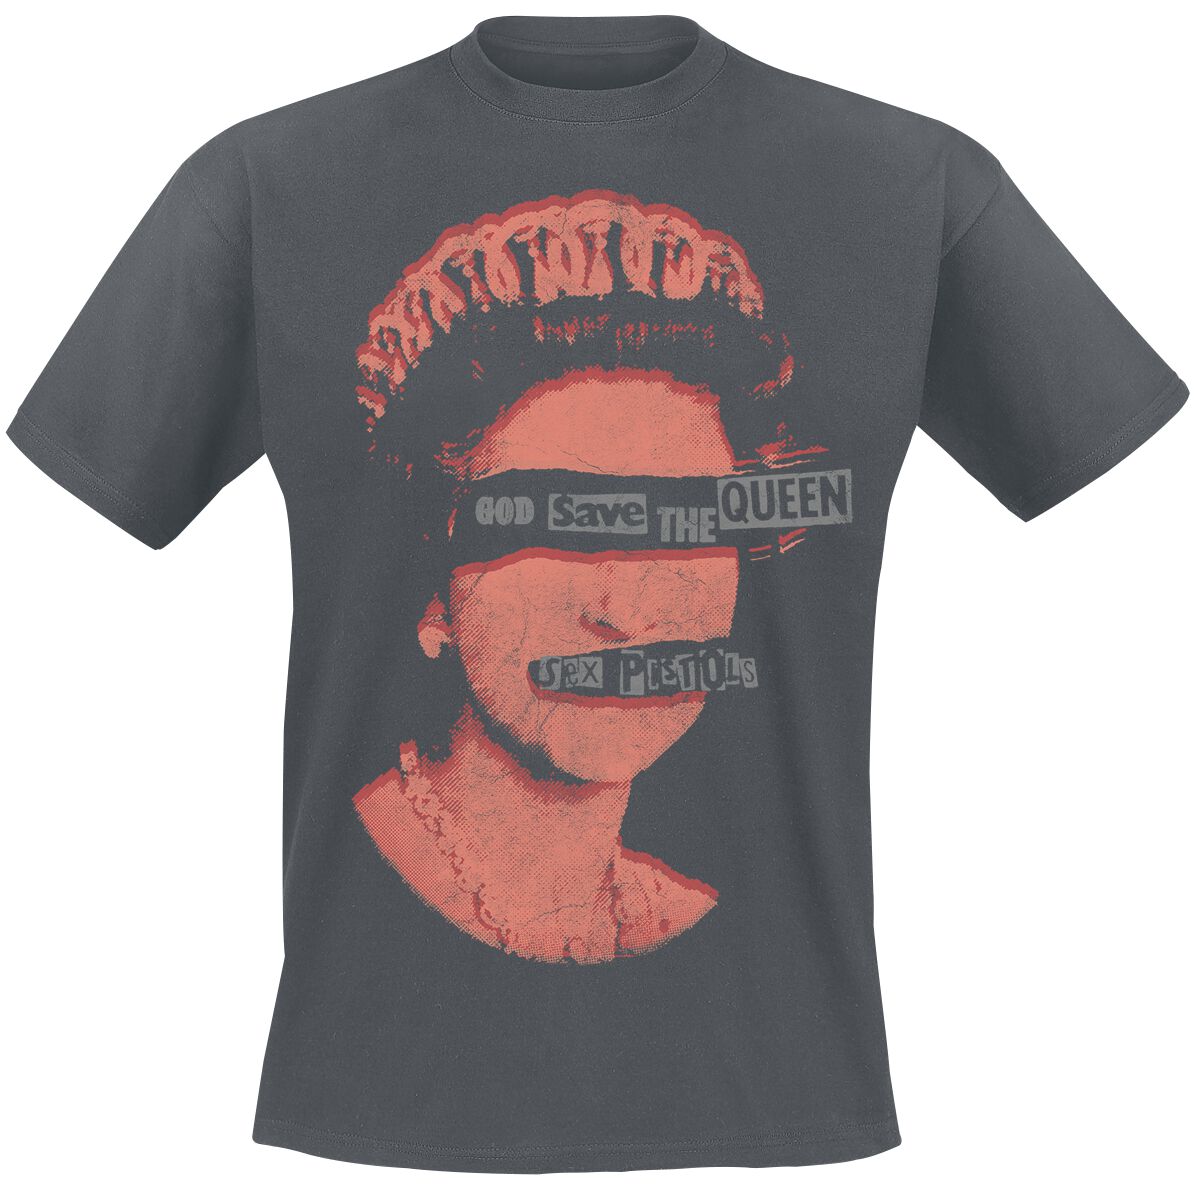 Sex Pistols T-Shirt - God Save The Queen - S bis XXL - für Männer - Größe S - dunkelgrau  - Lizenziertes Merchandise!